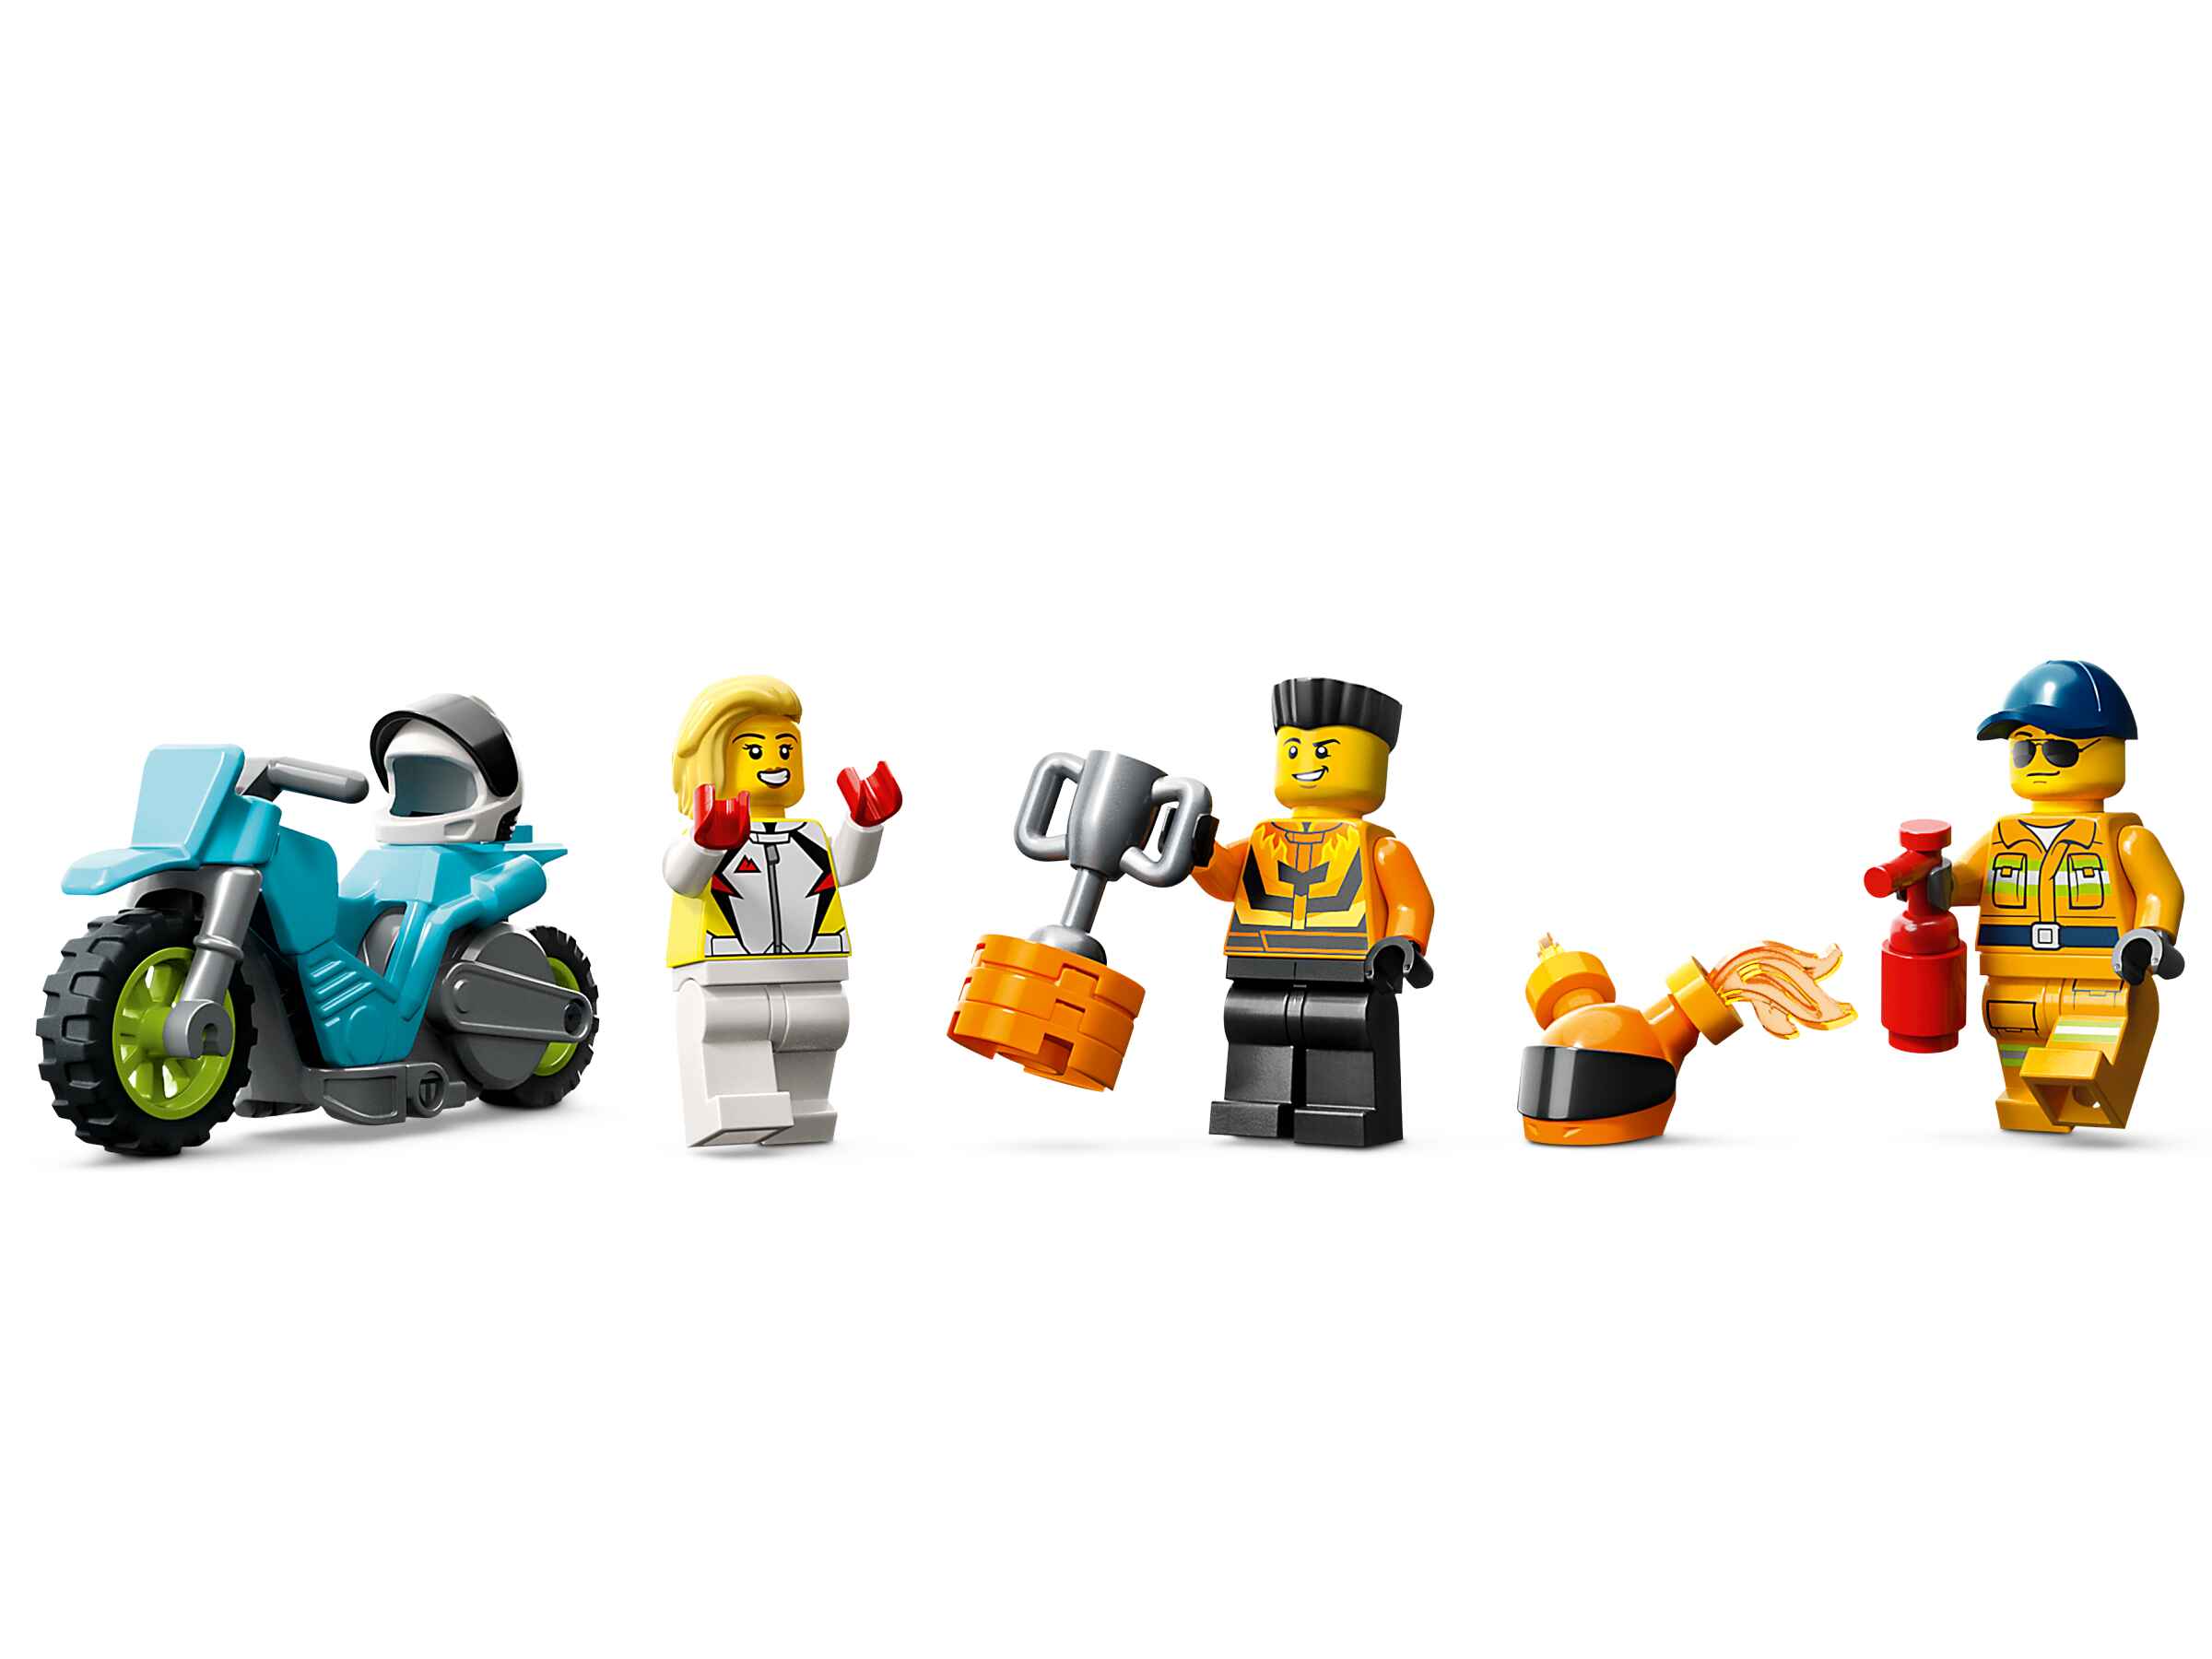 LEGO 60357 City Stunttruck mit Feuerreifen-Challenge, Stuntz, 3 Minifiguren